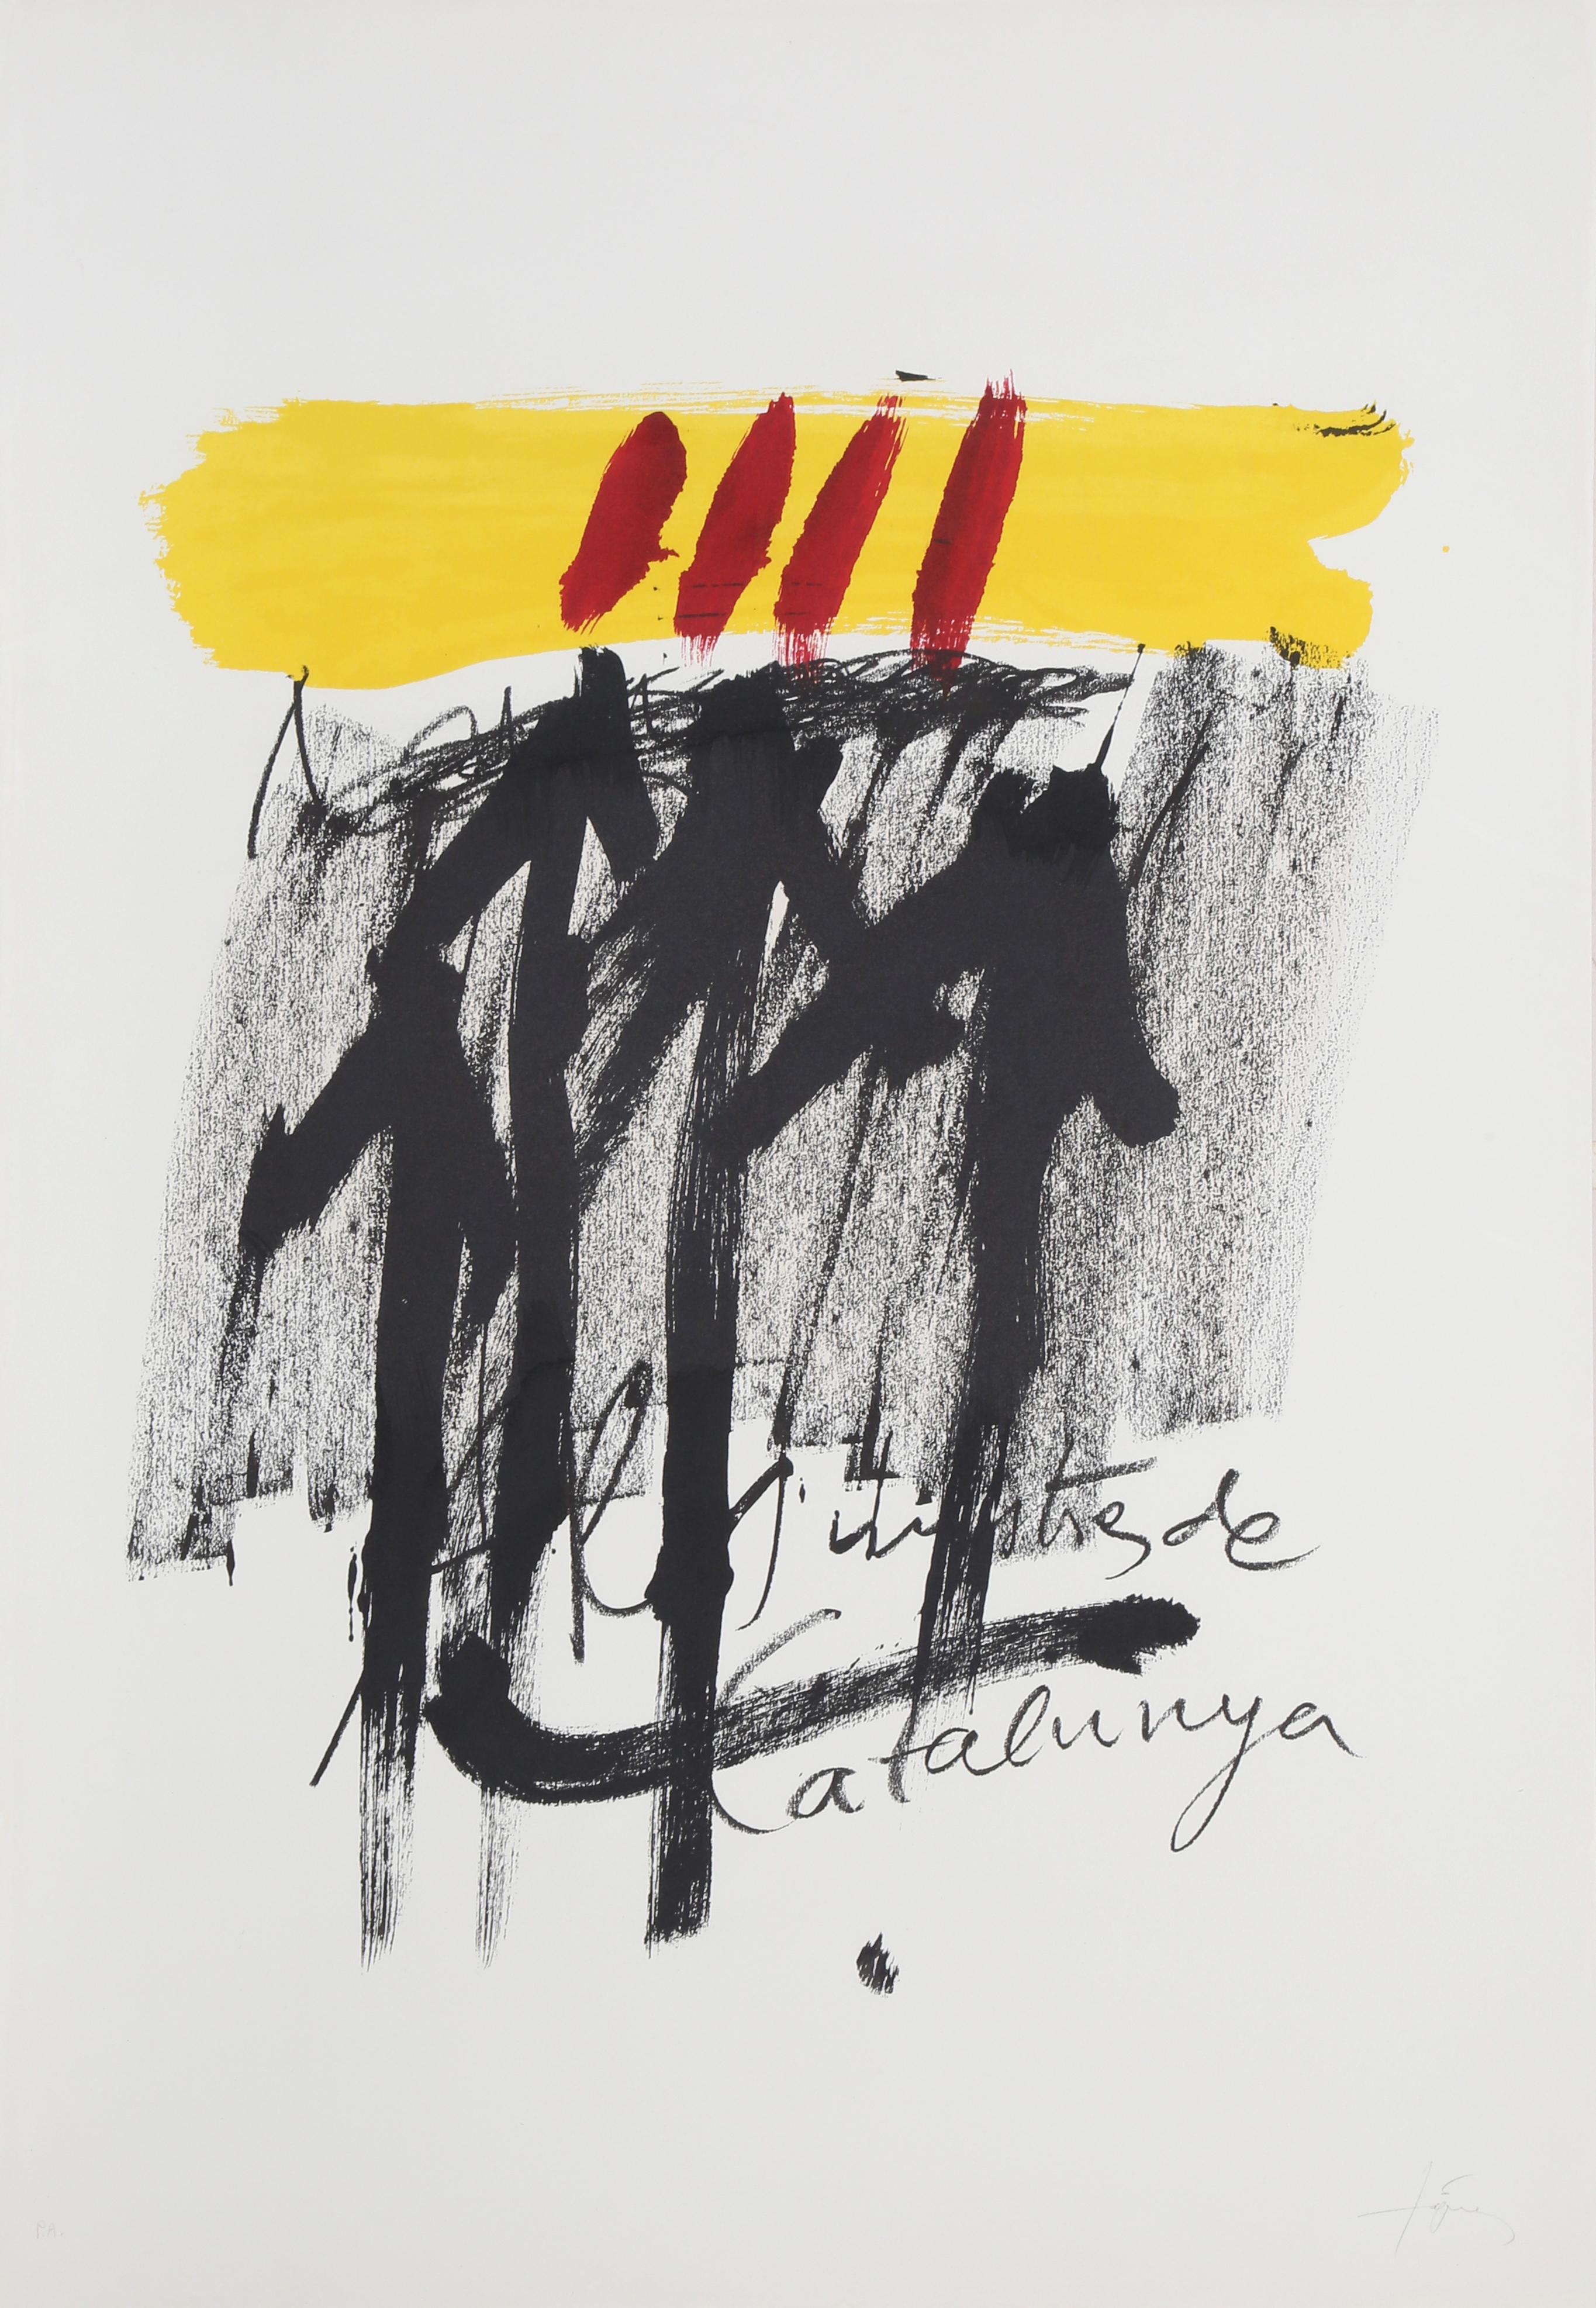 Antoni Tàpies Abstract Print – No. 6 aus „Als Mestres de Catalunya,“ Lithographie von Antoni Tapies, 1974